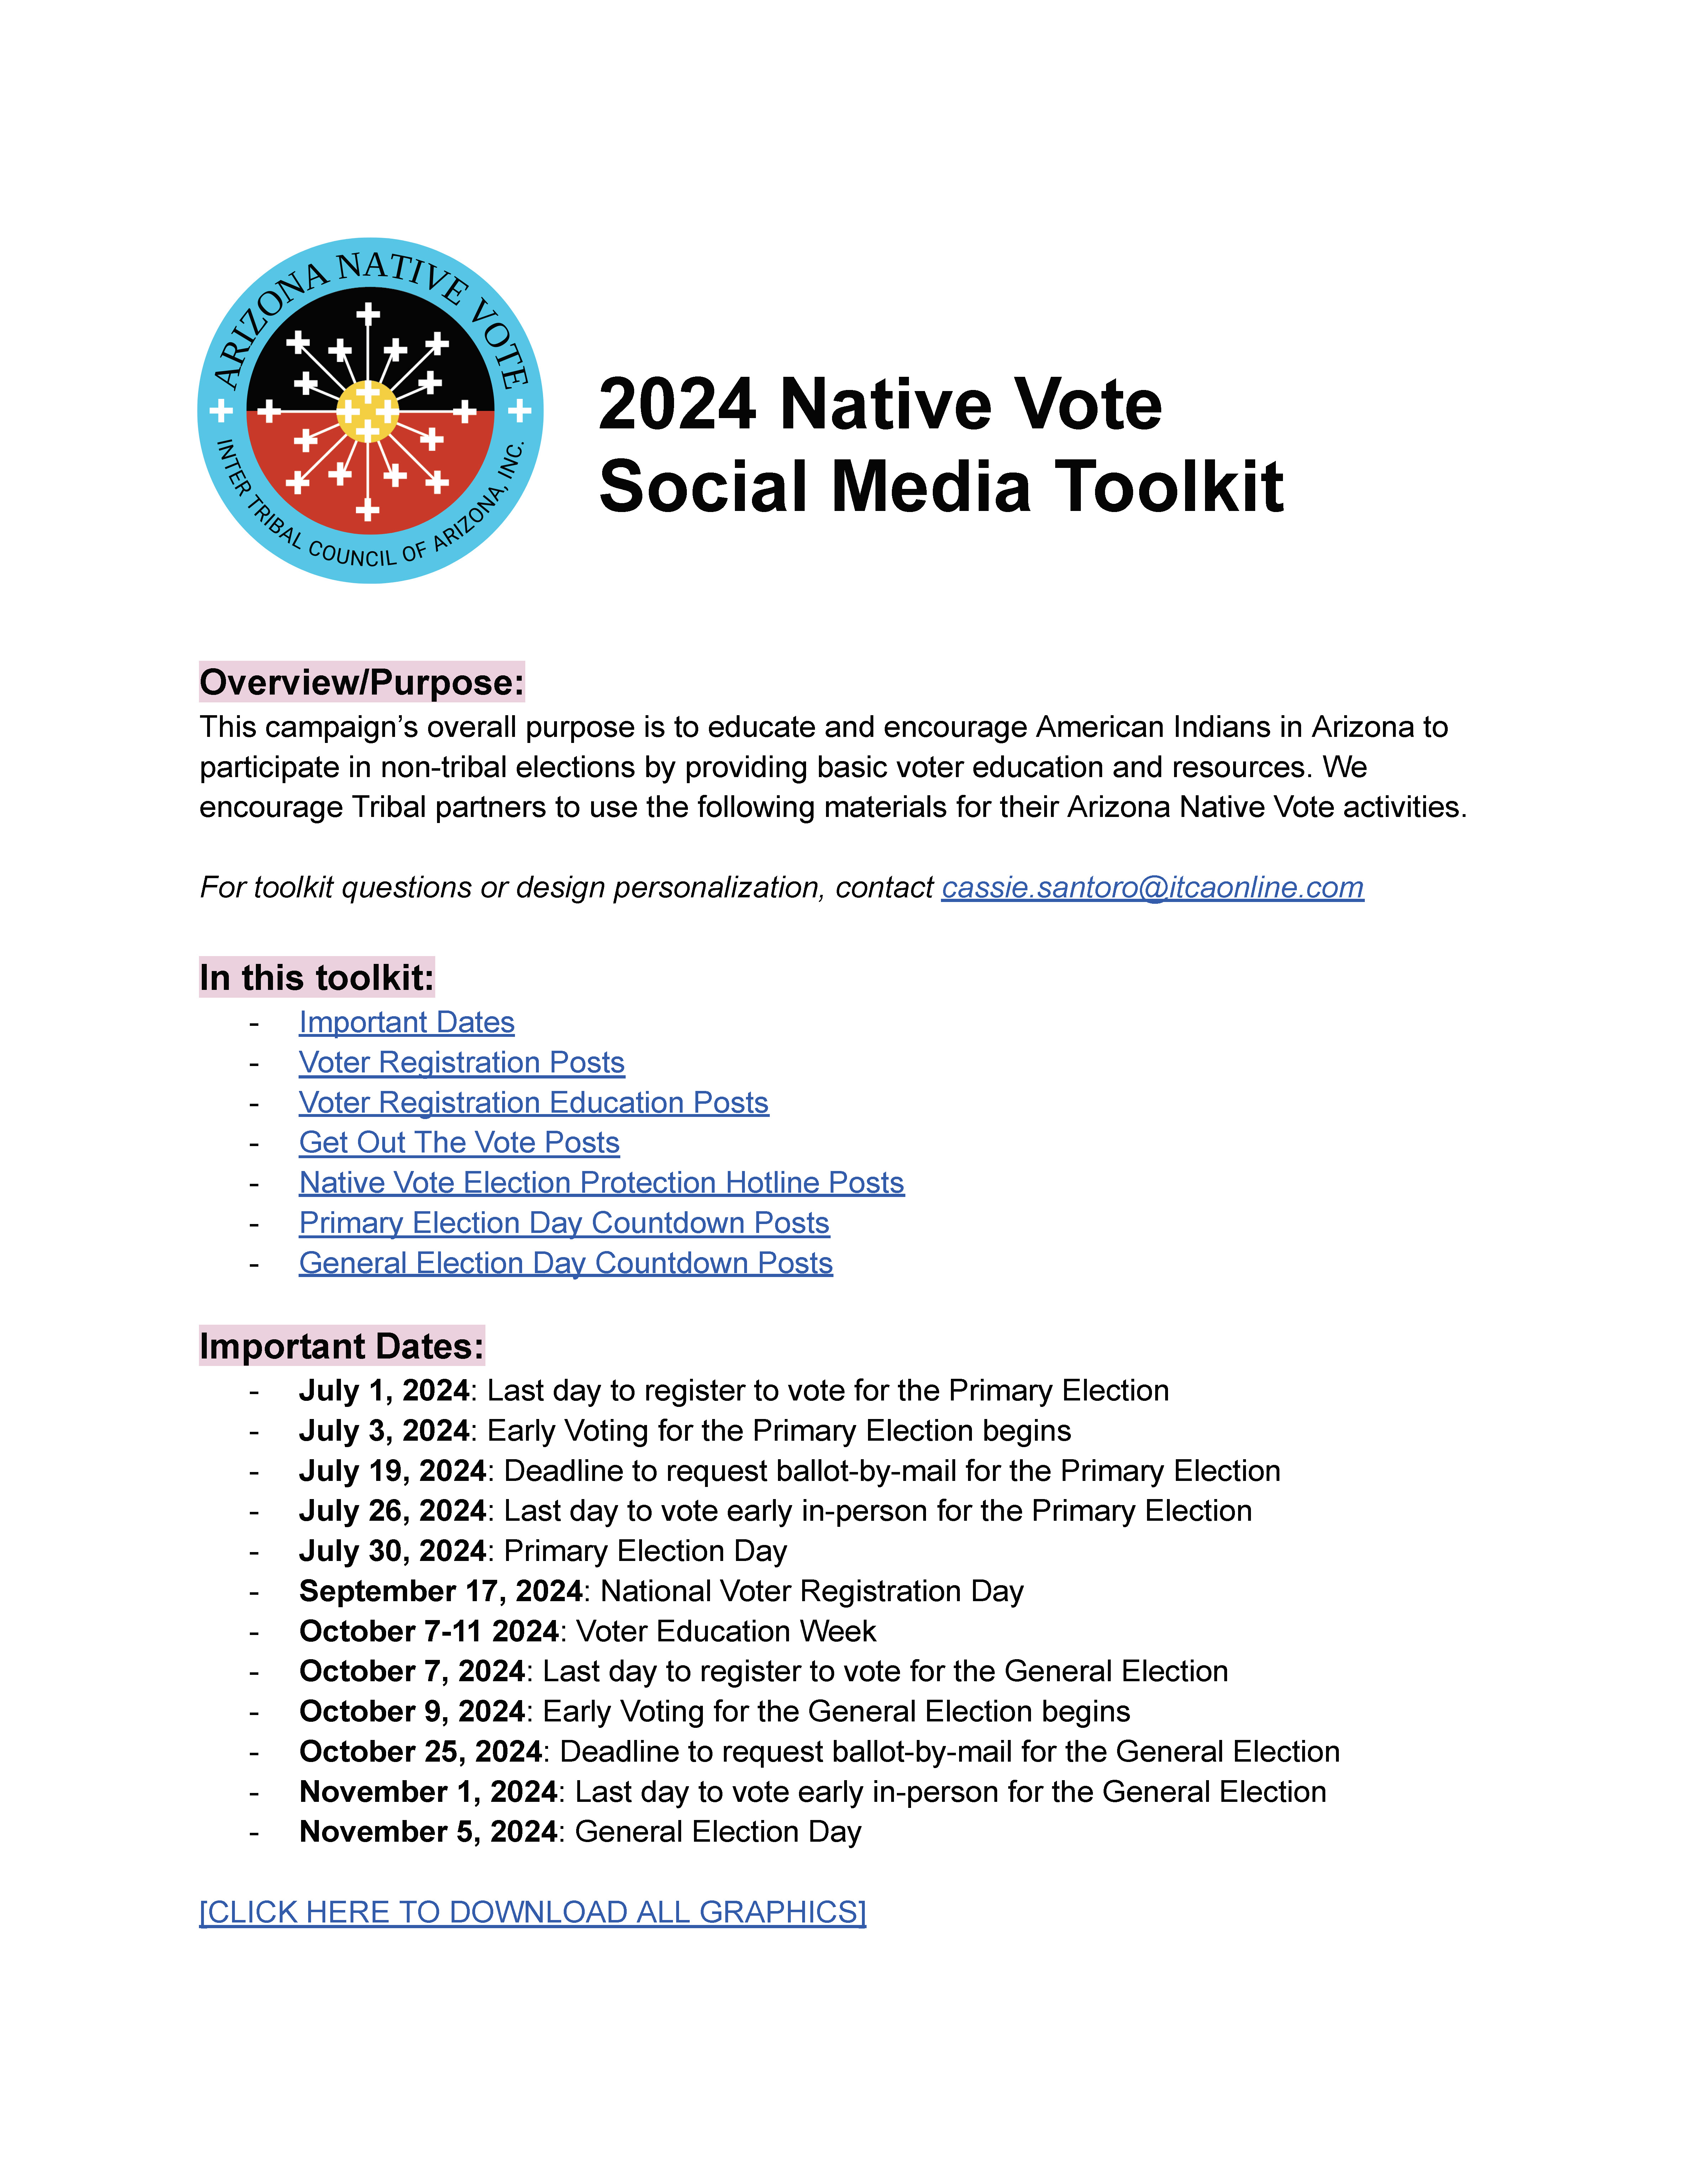 2024 Native Vote Social Media Toolkit